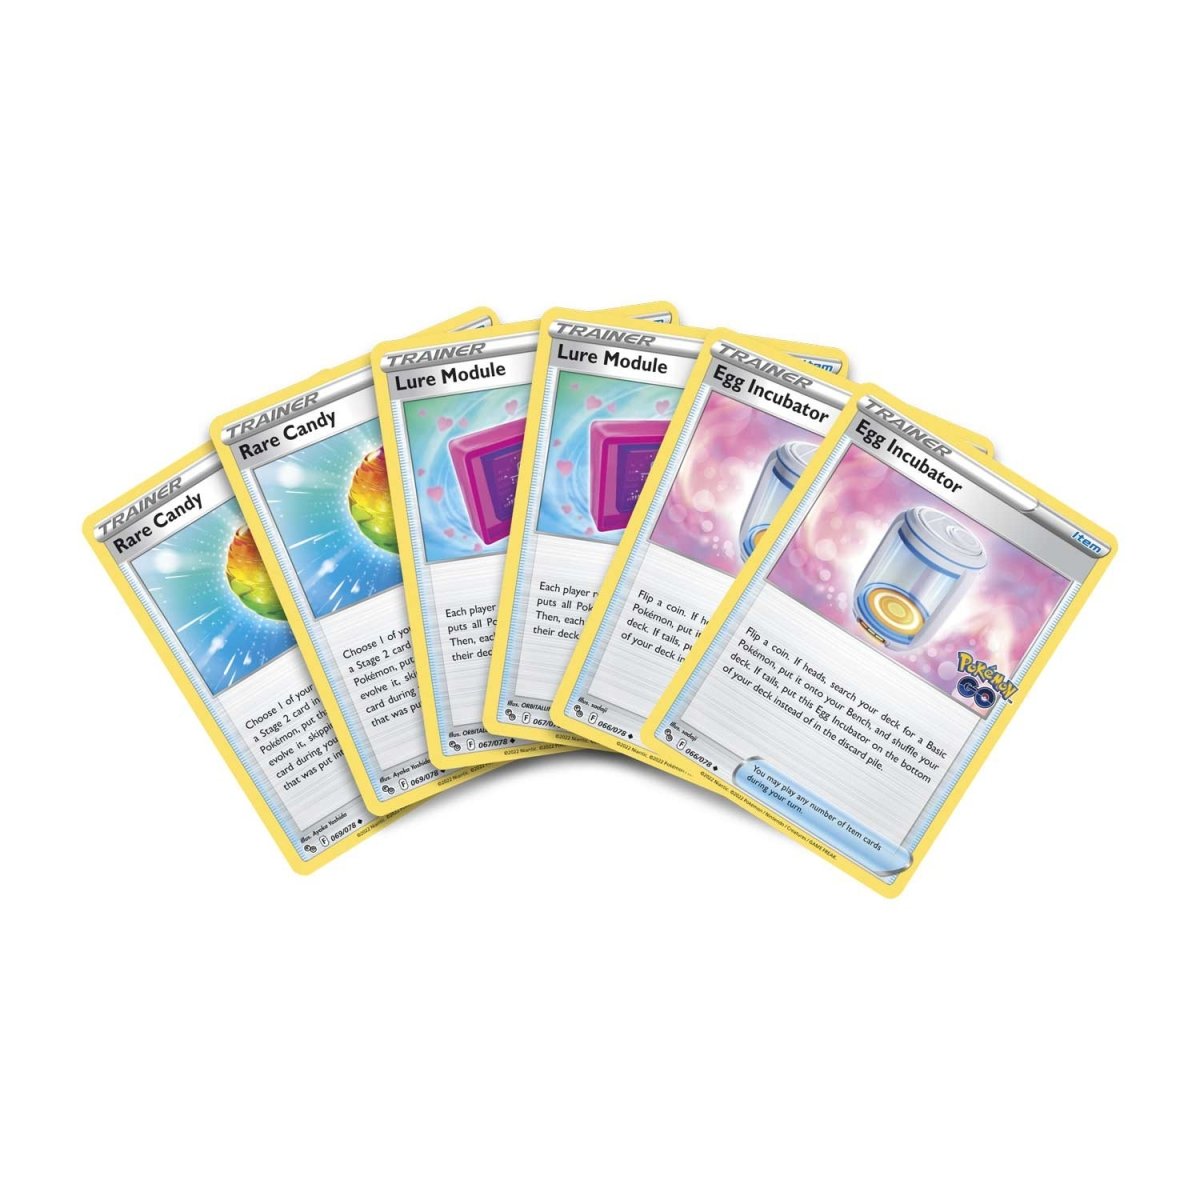 A Plus Collectibles  Pokémon GO - Mewtwo V Battle Deck - A Plus  Collectibles